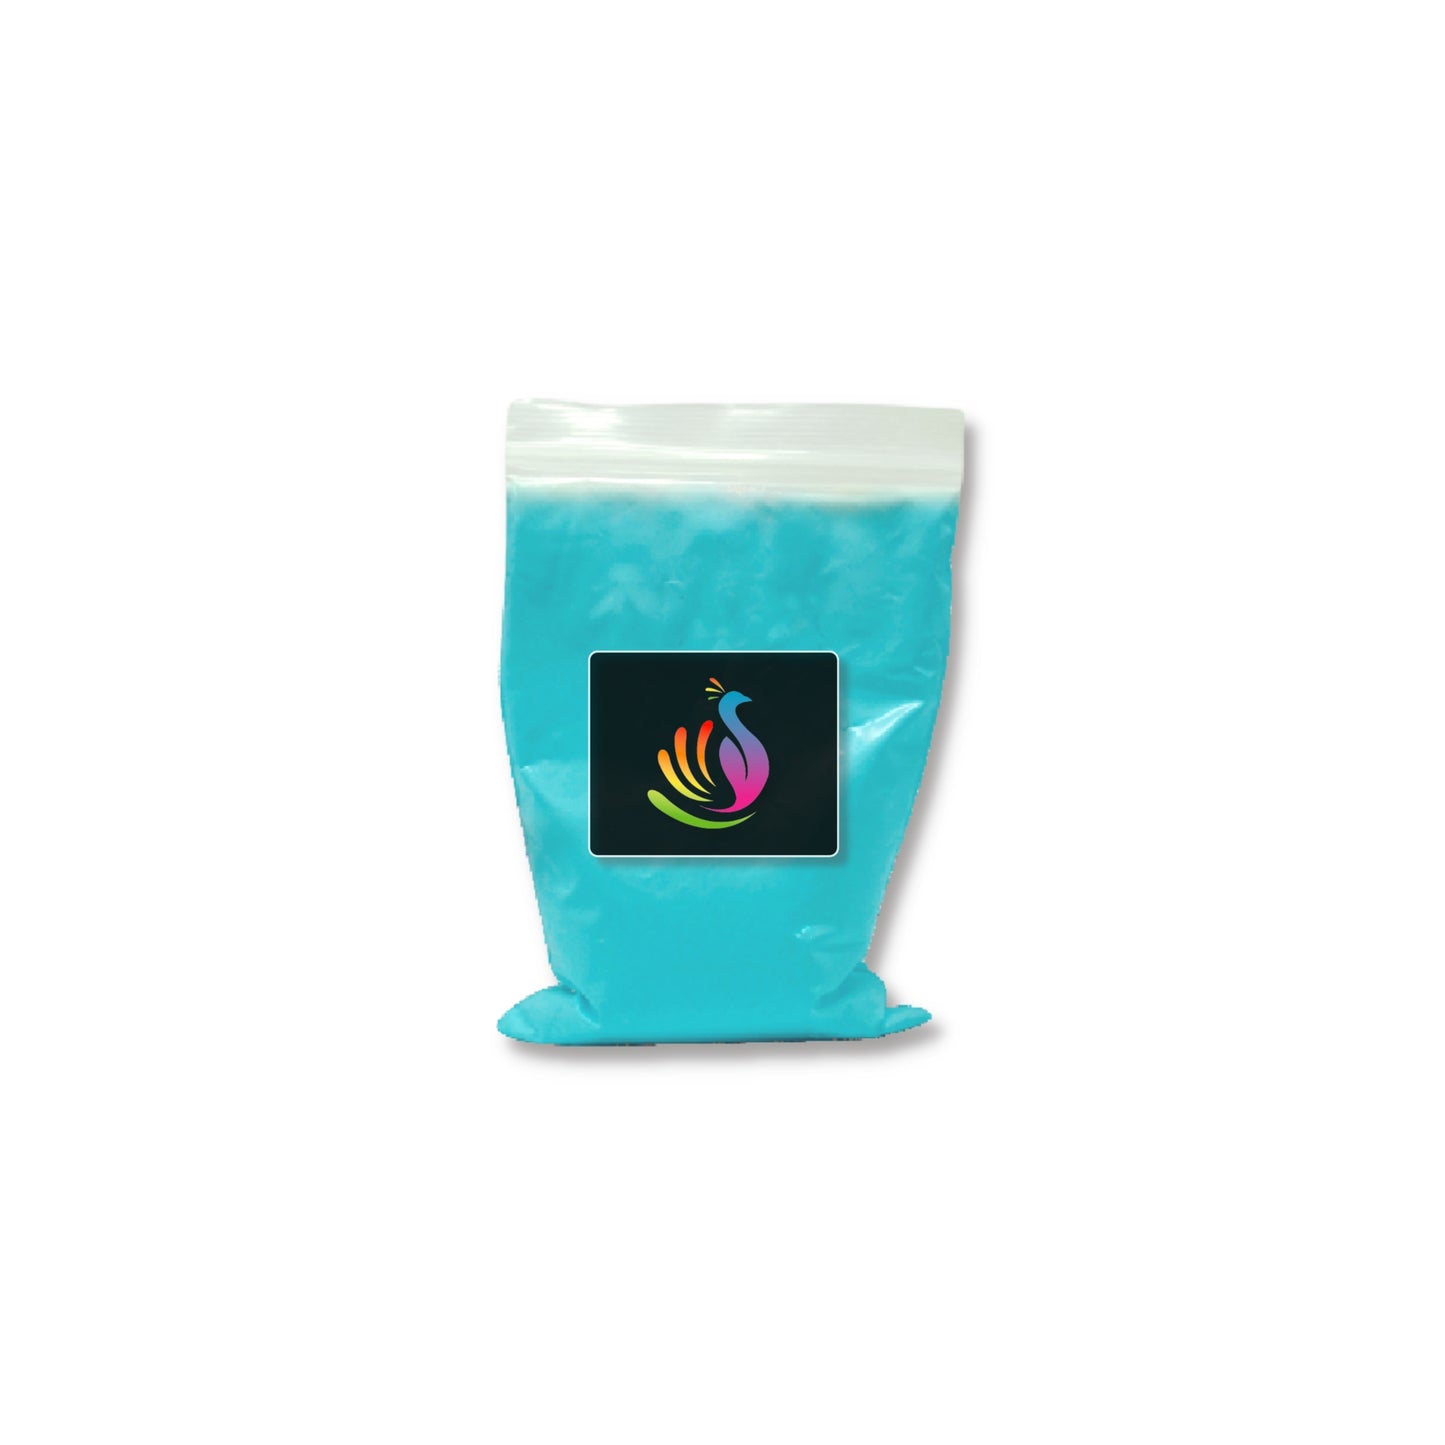 1lb Bag Holi Color Powder